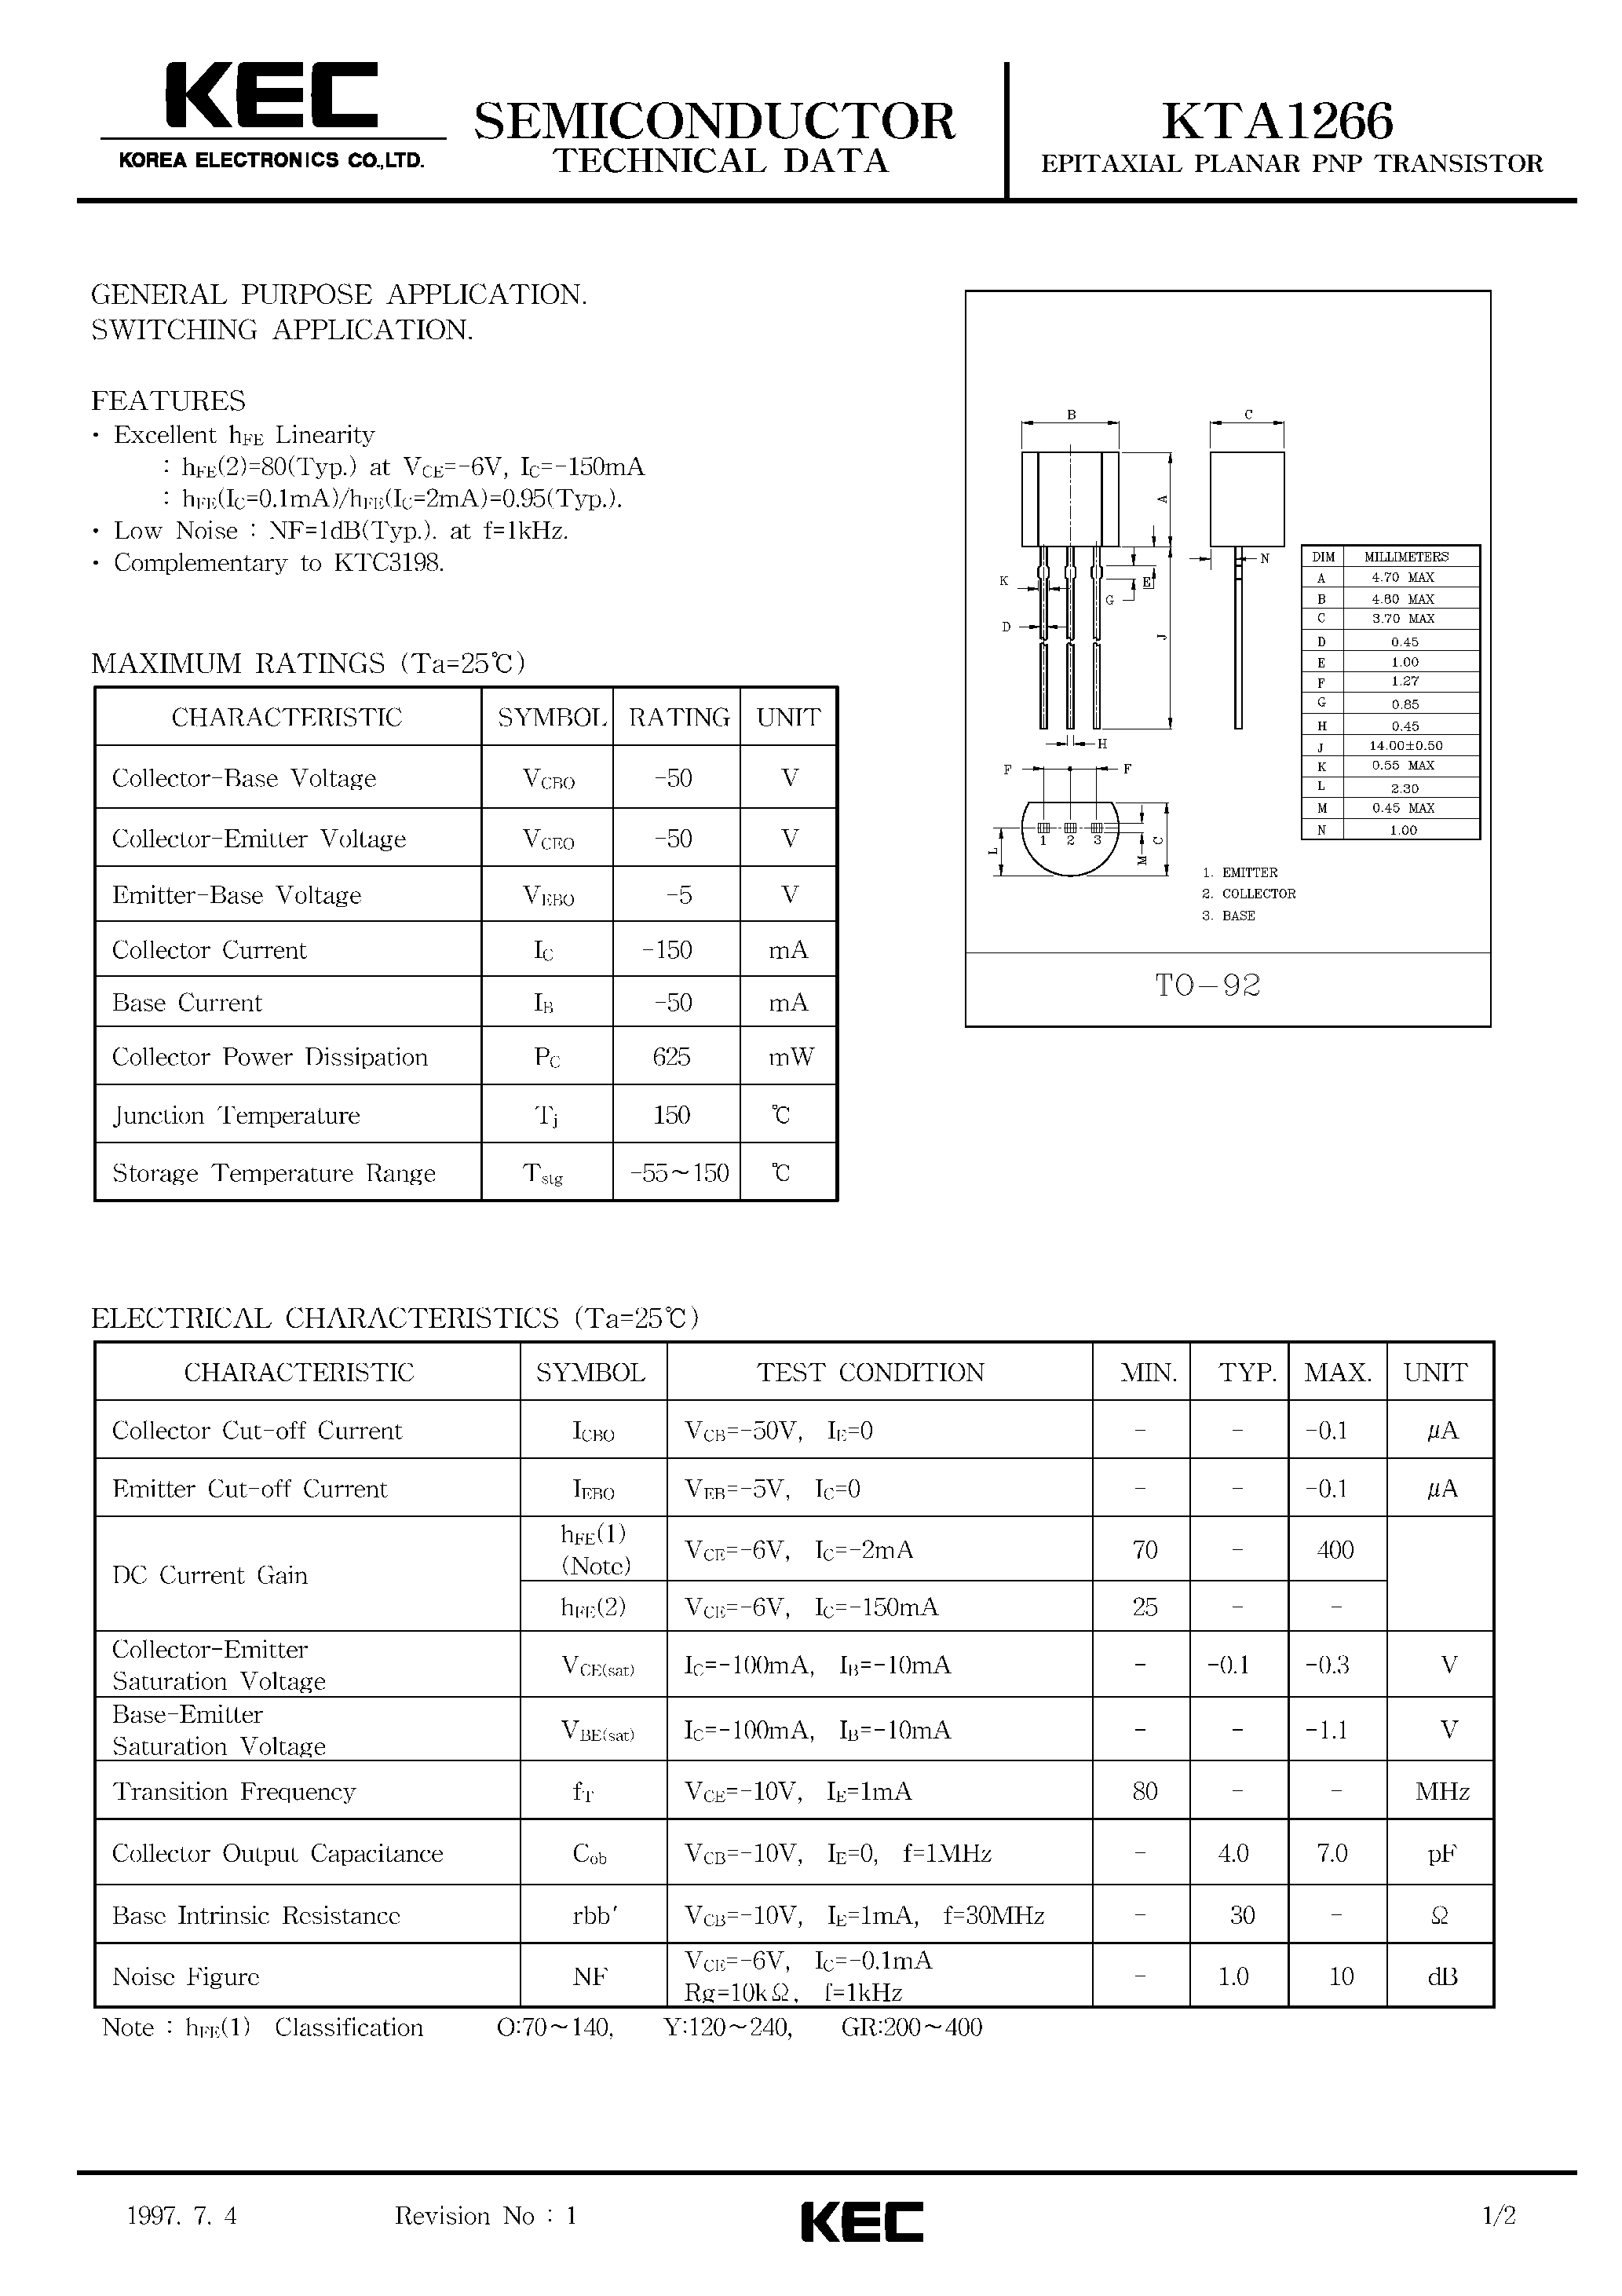 Datasheet KTA1266 - EPITAXIAL PLANAR PNP TRANSISTOR (GENERAL PURPOSE/ SWITCHING) page 1